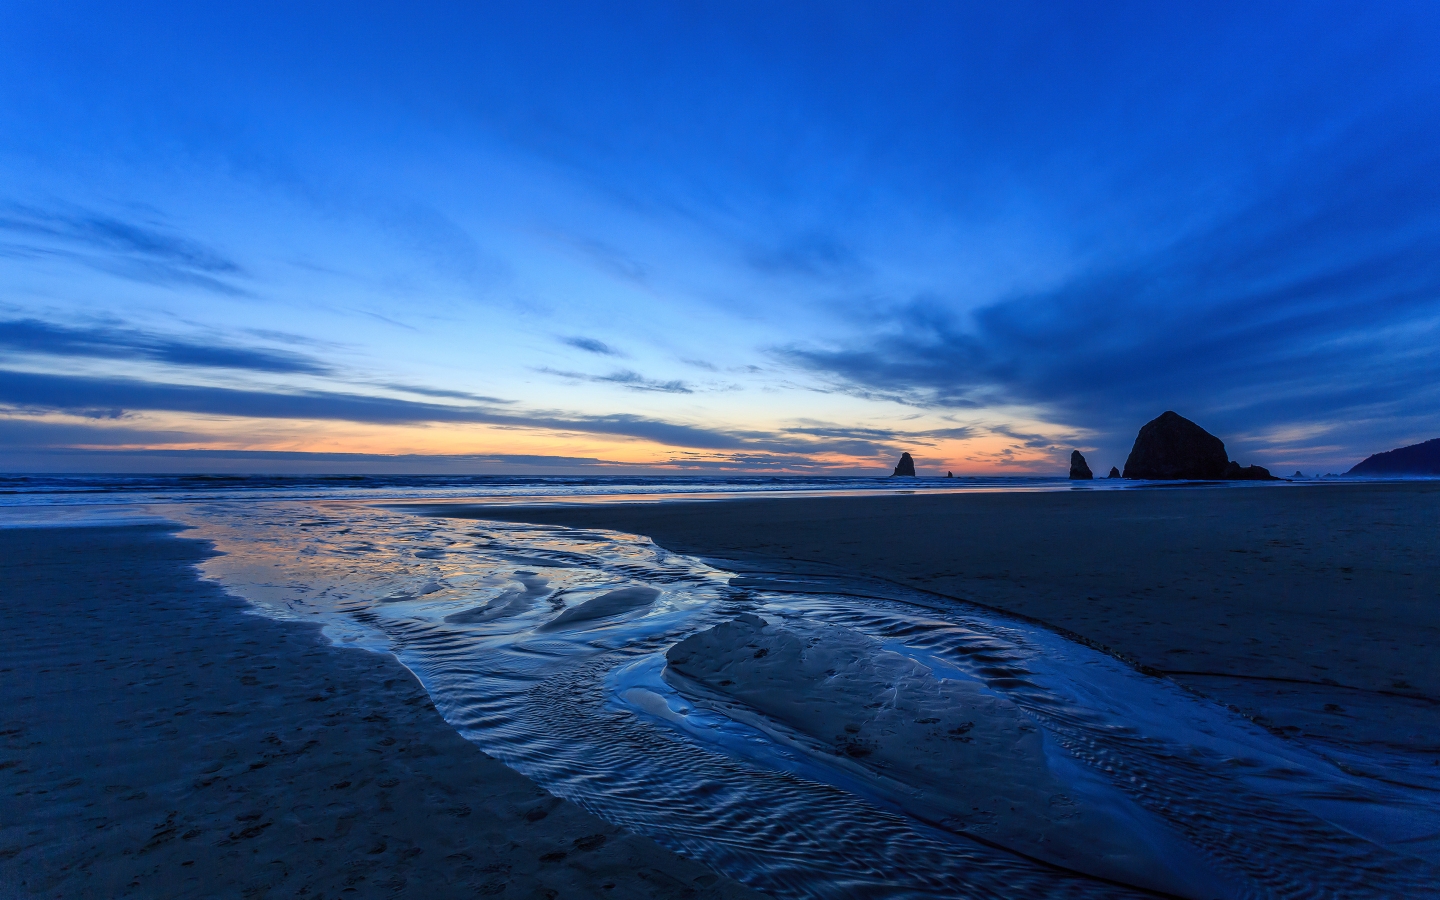 Sunset Oregon Beach for 1440 x 900 widescreen resolution